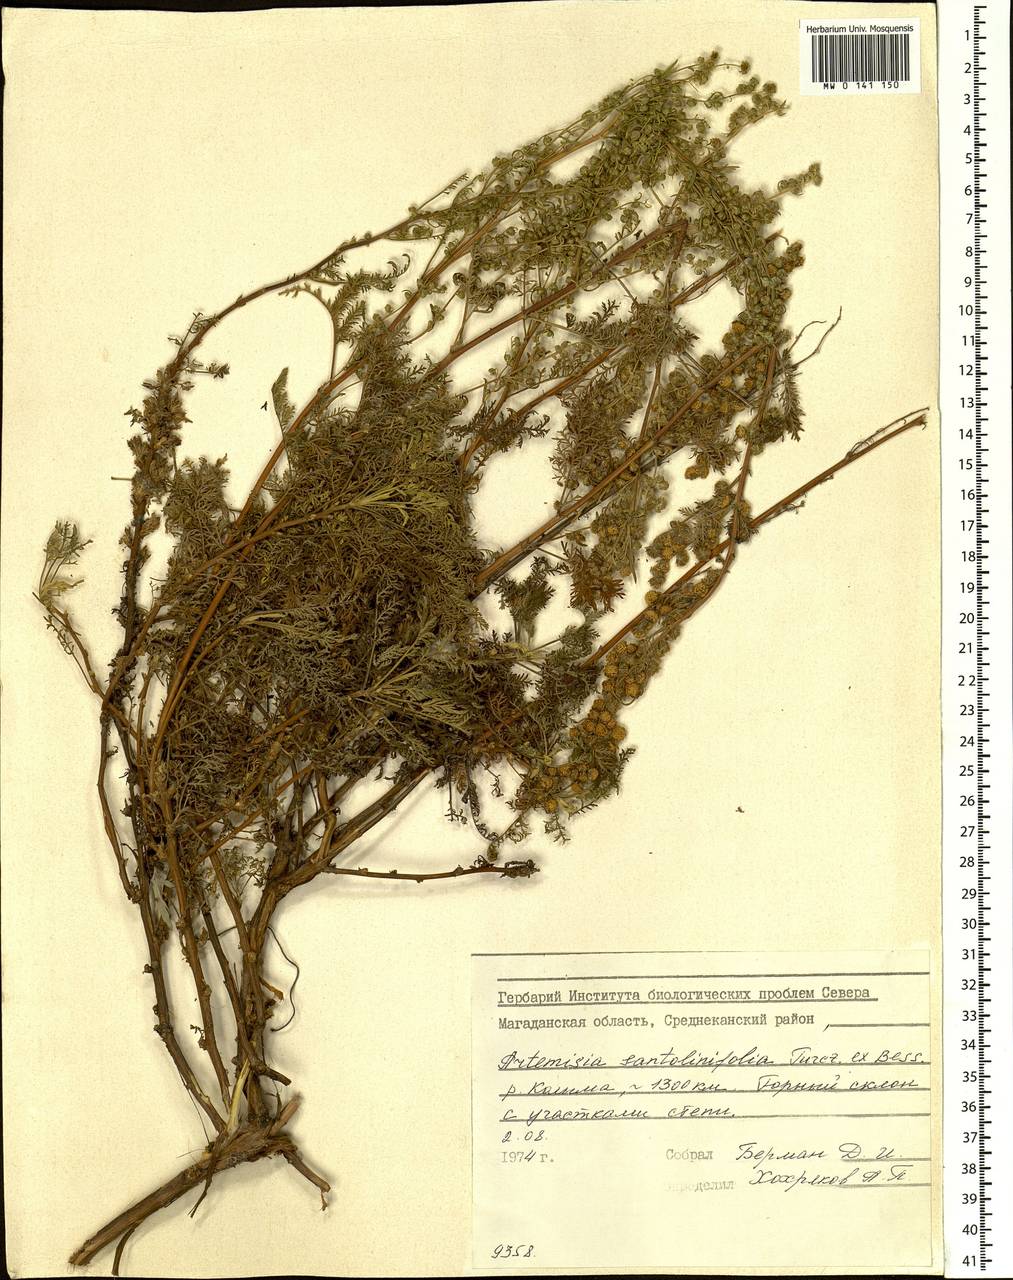 Artemisia stechmanniana Besser, Siberia, Chukotka & Kamchatka (S7) (Russia)